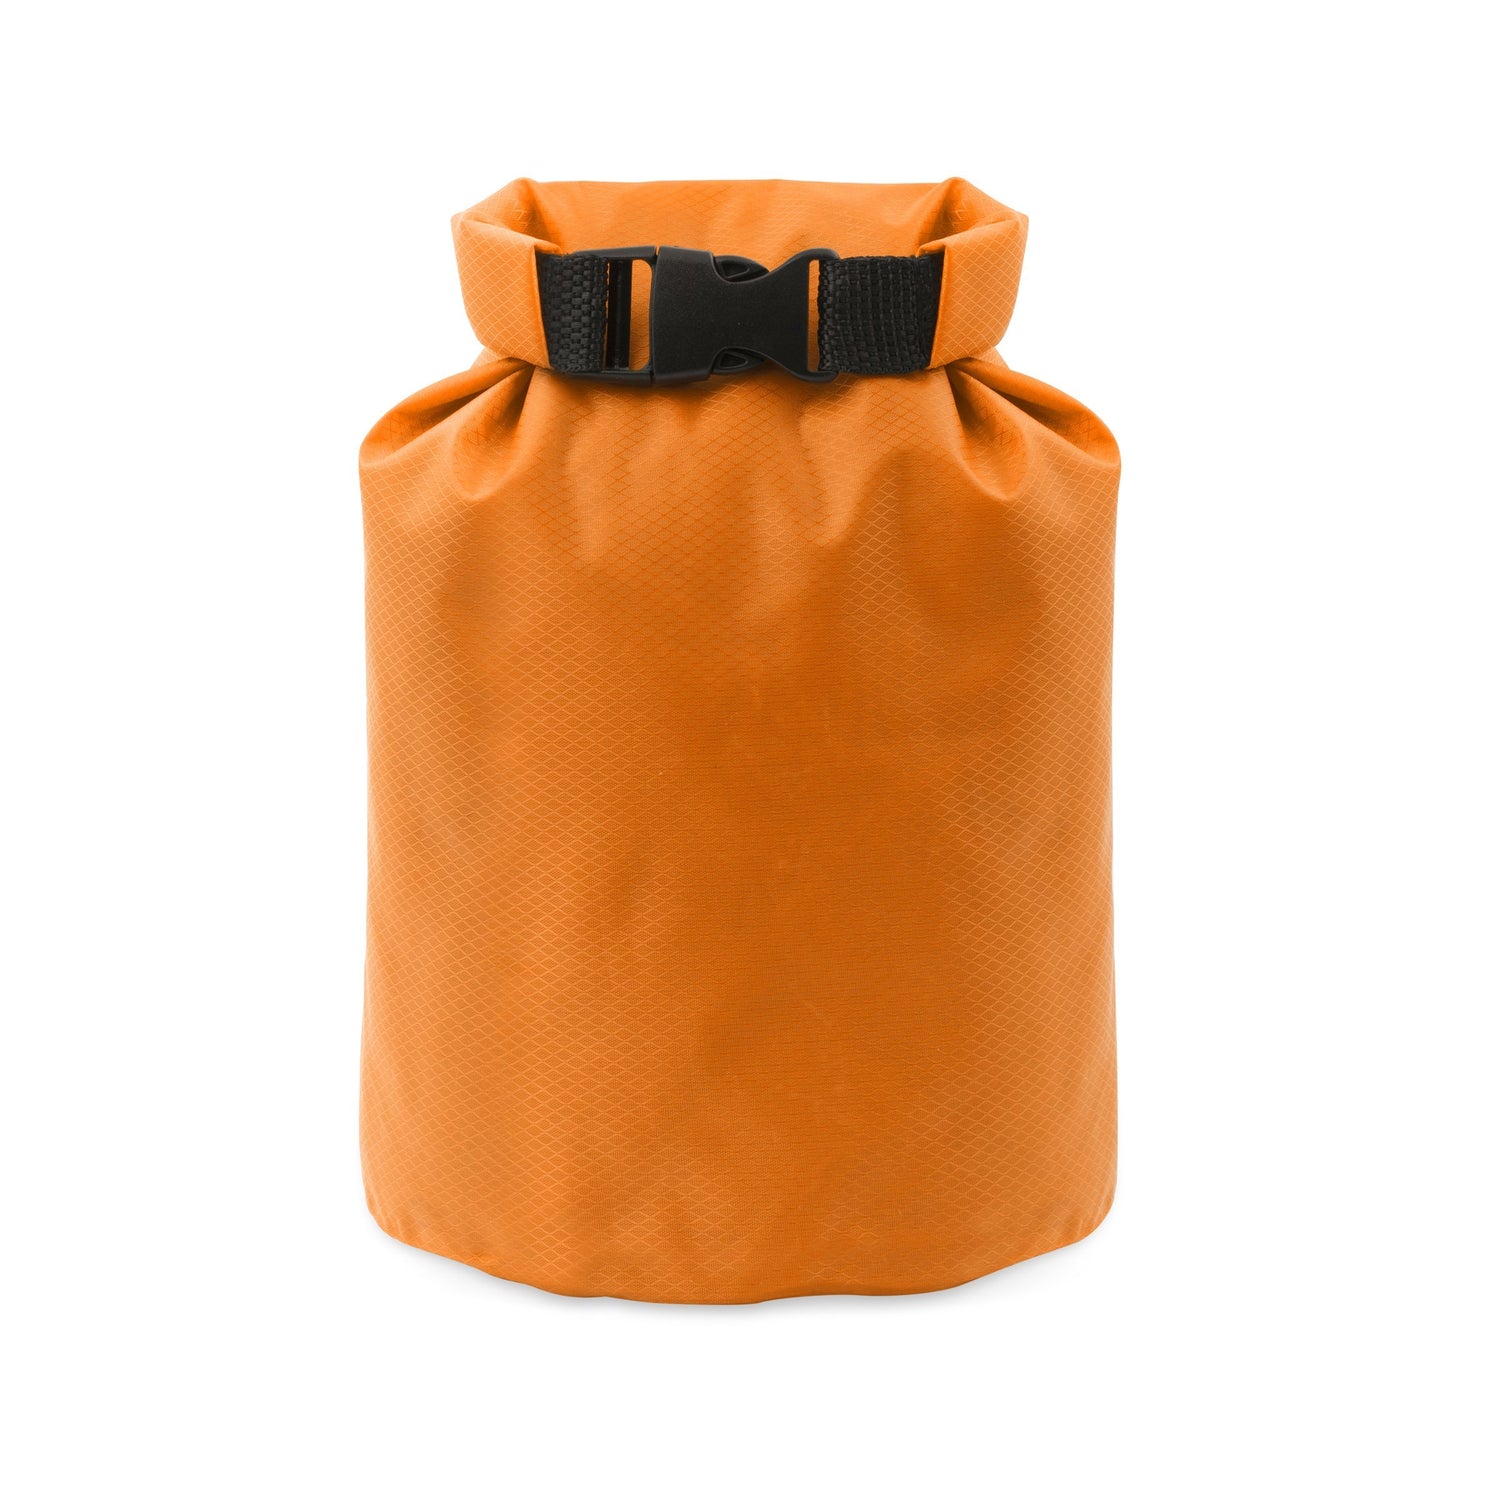 Orange Waterproof Bag